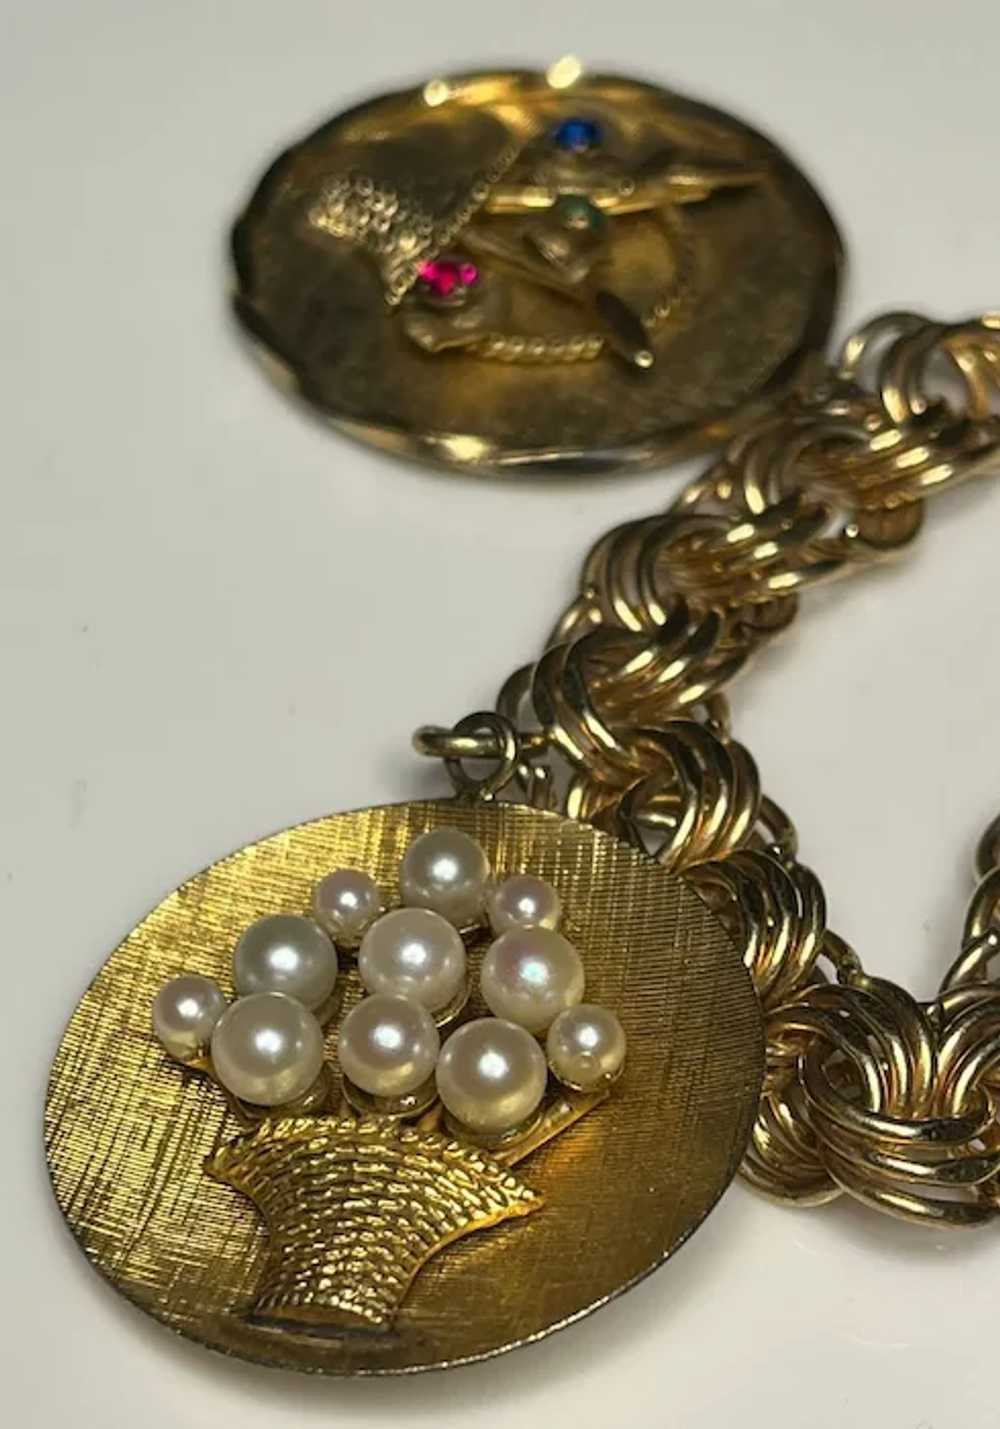 Fantastic Vintage 12k Gold-Filled Charm Bracelet - image 2